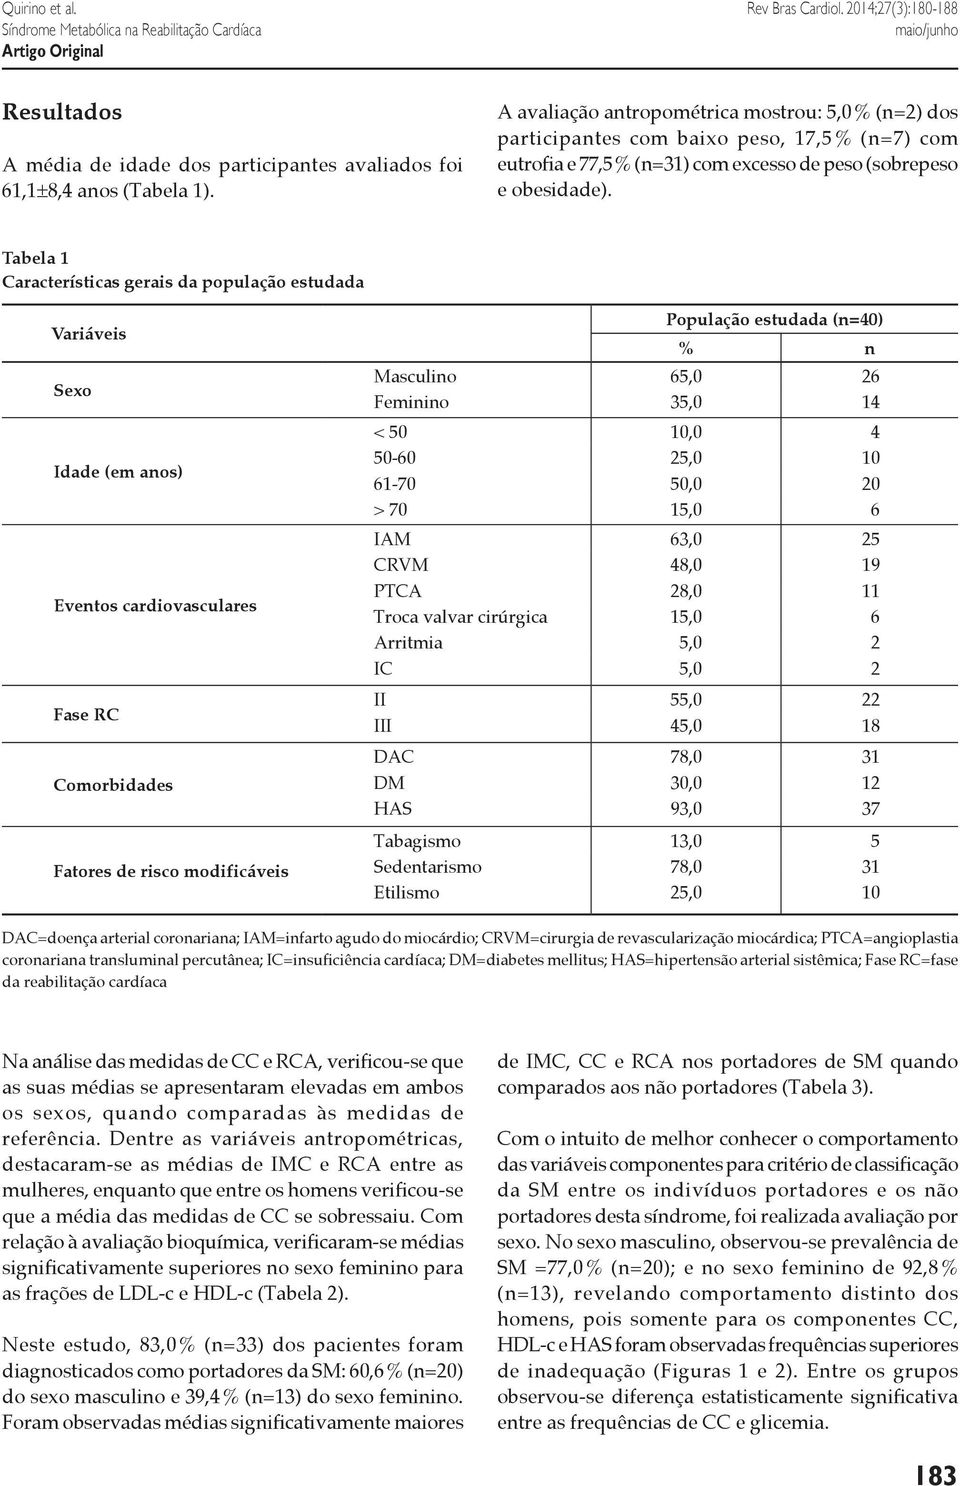 Tabela 1 Características gerais da população estudada Variáveis Sexo Idade (em anos) Eventos cardiovasculares Fase RC Comorbidades Fatores de risco modificáveis População estudada (n=40) % n